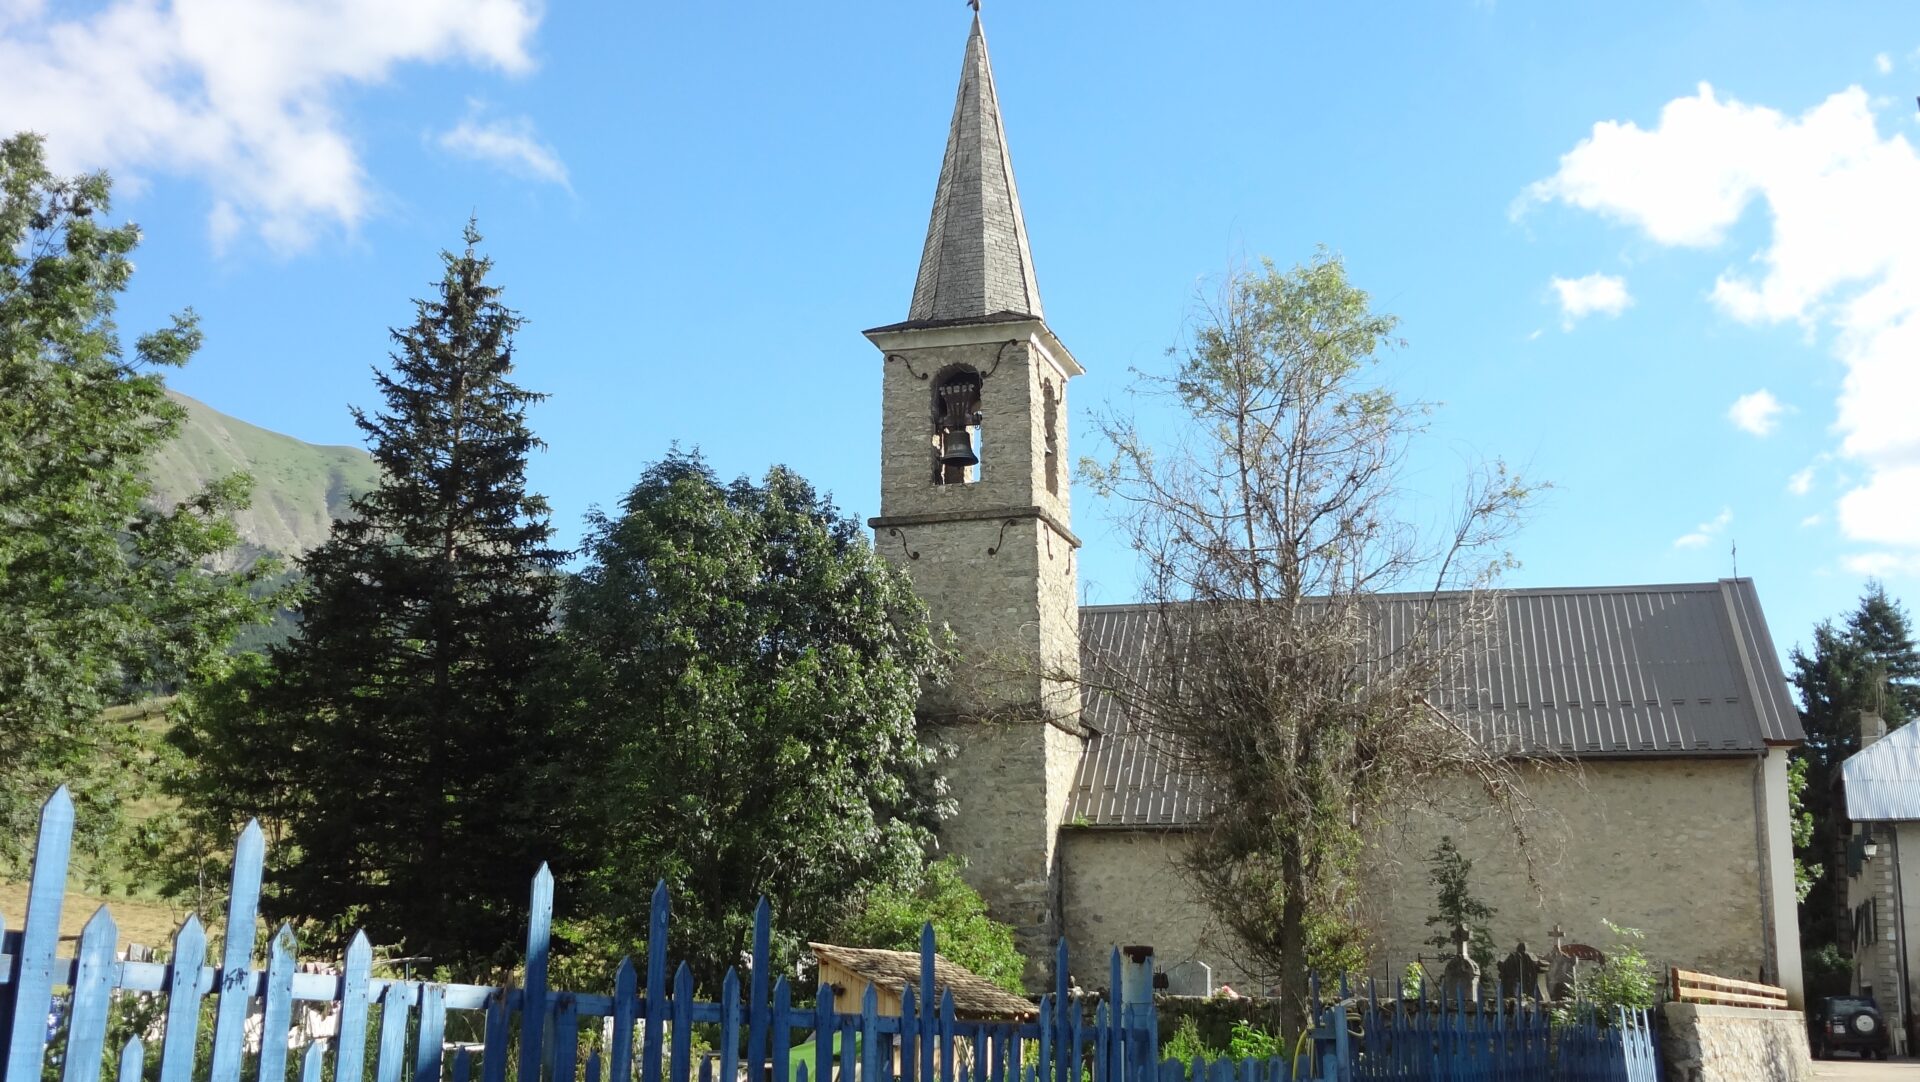 L'église Ste Marthe du Vernet où le petit Emile a disparu | wikimedfia commons CC-BY-SA-2.0